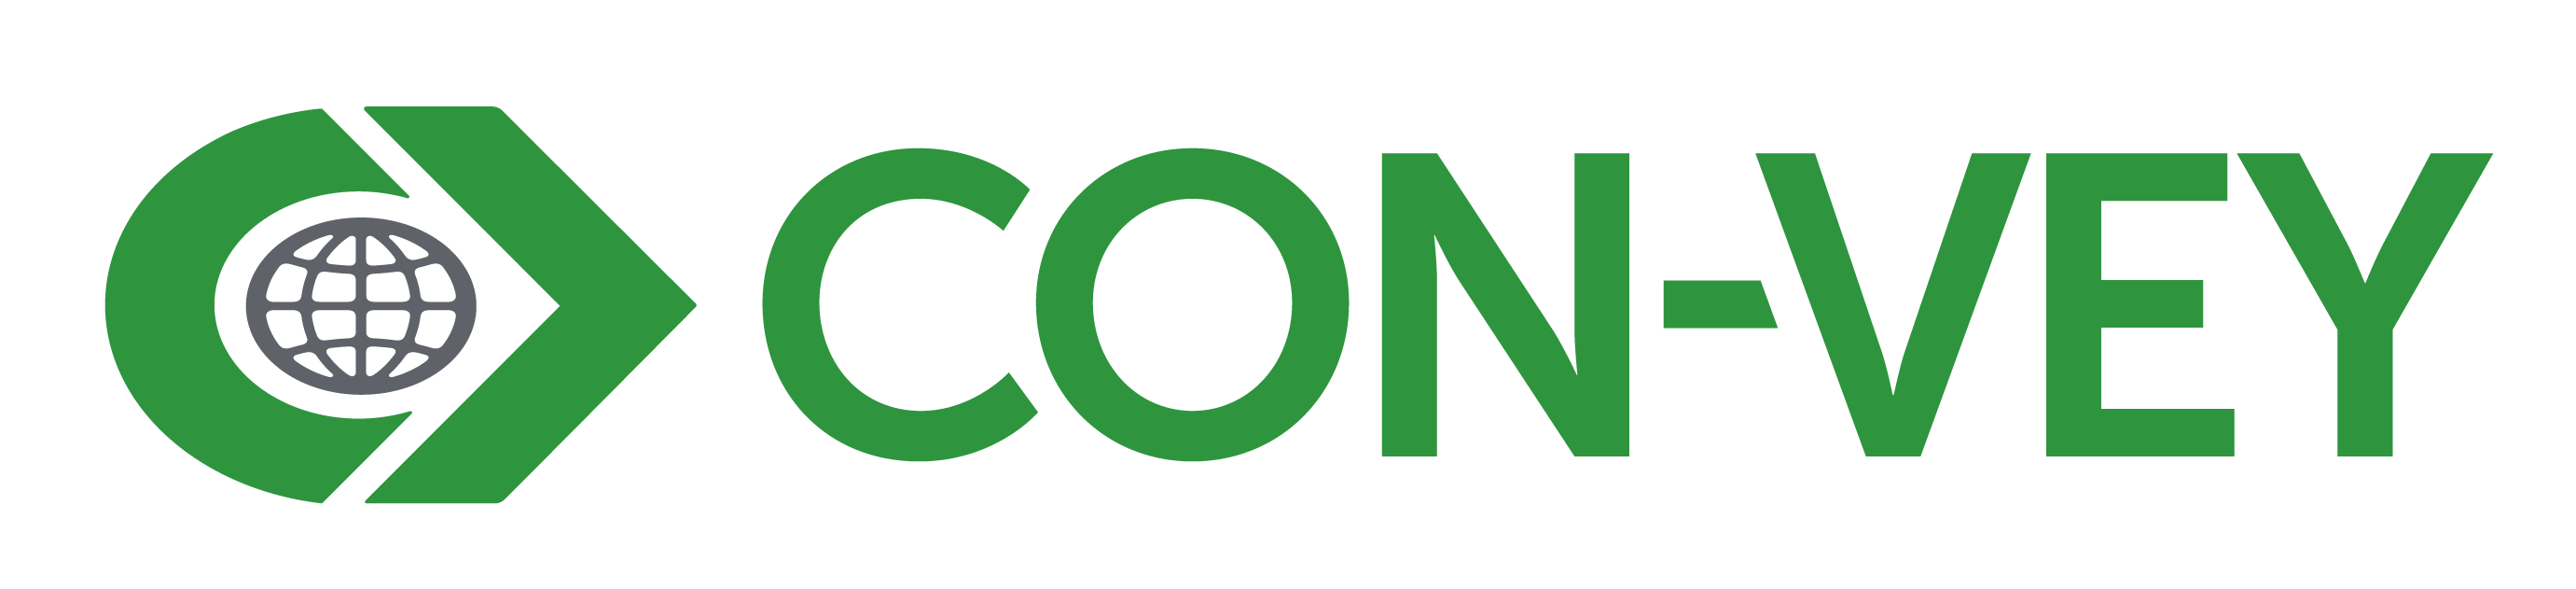 Con-Vey logo